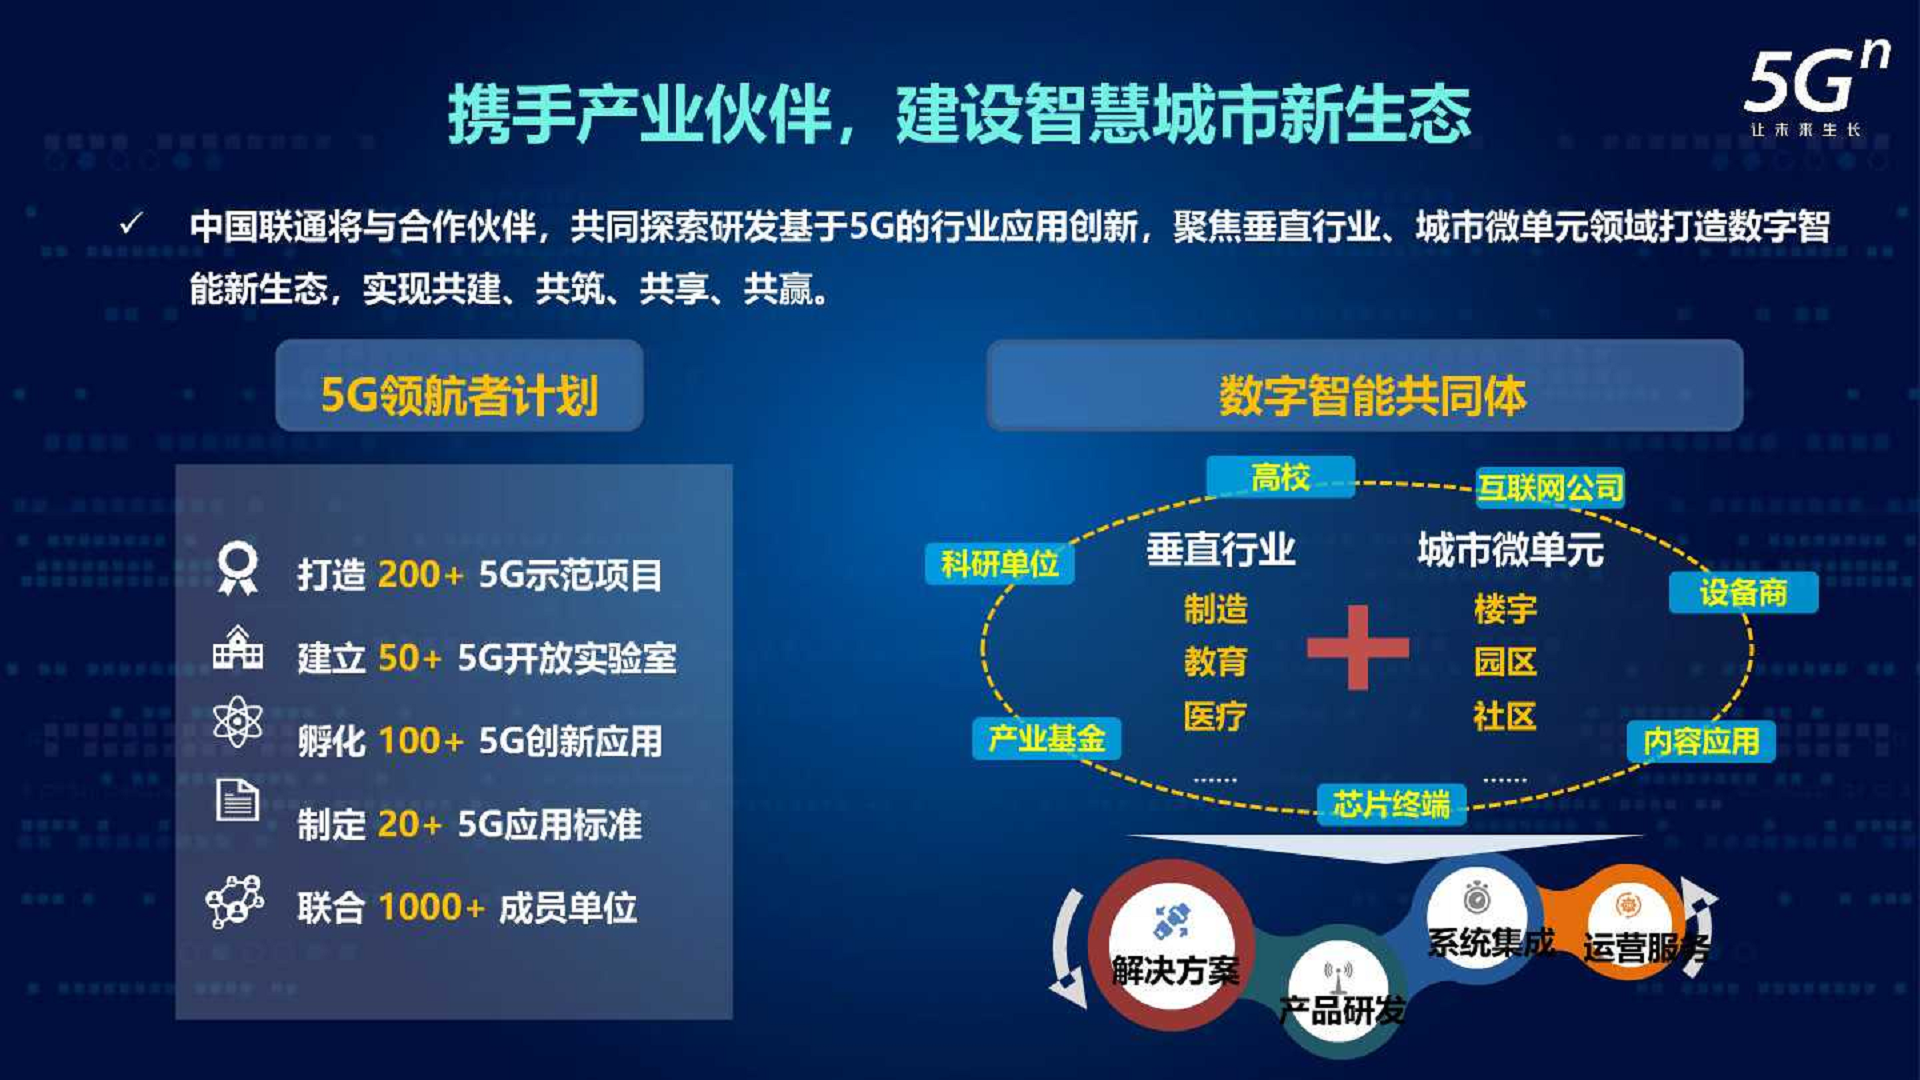 沈阳 5G 网络物流园：科技与物流融合的典范，引领未来物流潮流  第6张